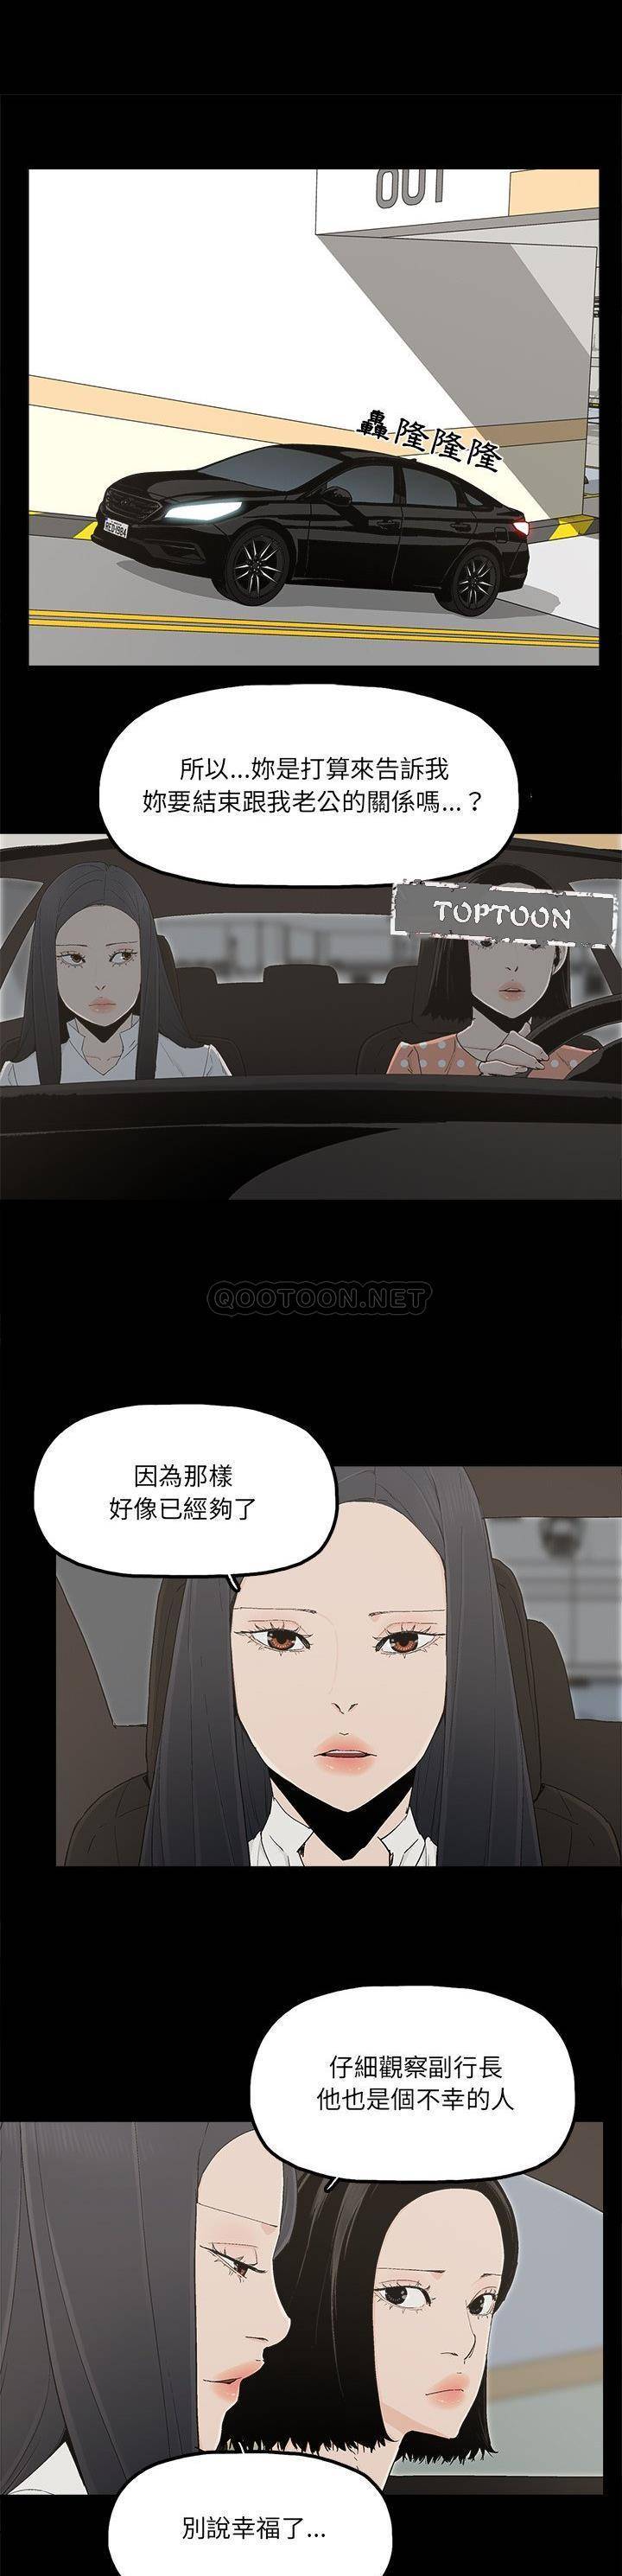 幸福  最终话 漫画图片1.jpg